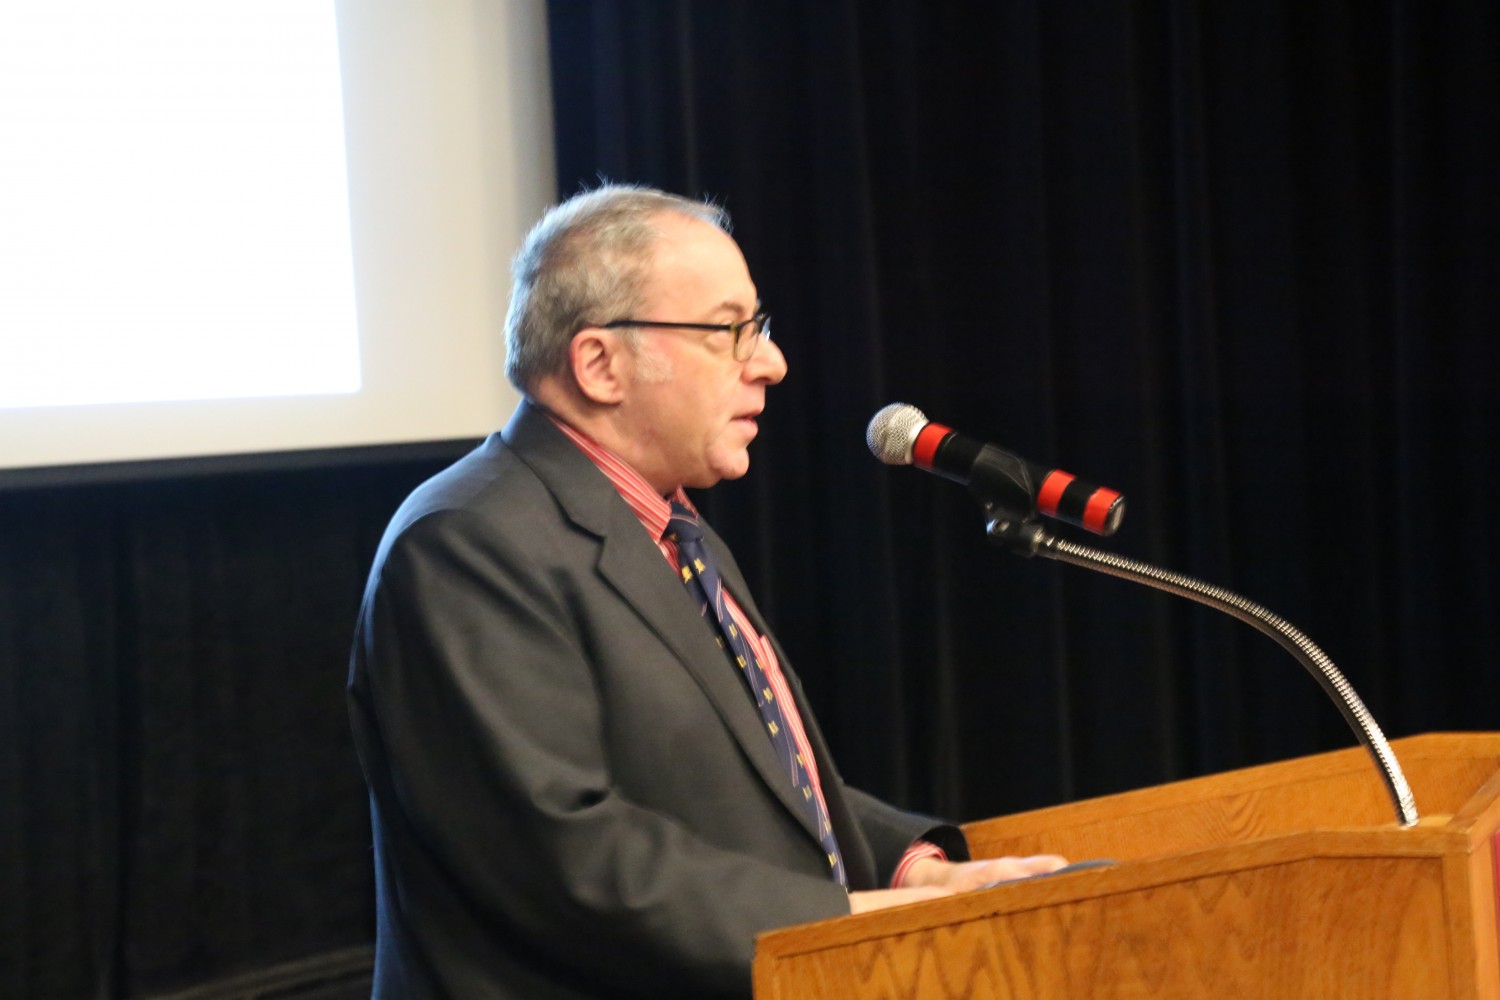 Ông Fred Litwin, chủ tịch Hiệp hội Phim Tư tưởng Tự do, đã đọc lời khai mạc sự kiện tại buổi trình chiếu phim "Thu hoạch Nhân thể" ở Đại học Ottawa vào ngày 6 tháng 4 năm 2017. (Jonathan Ren/ Epoch Times)